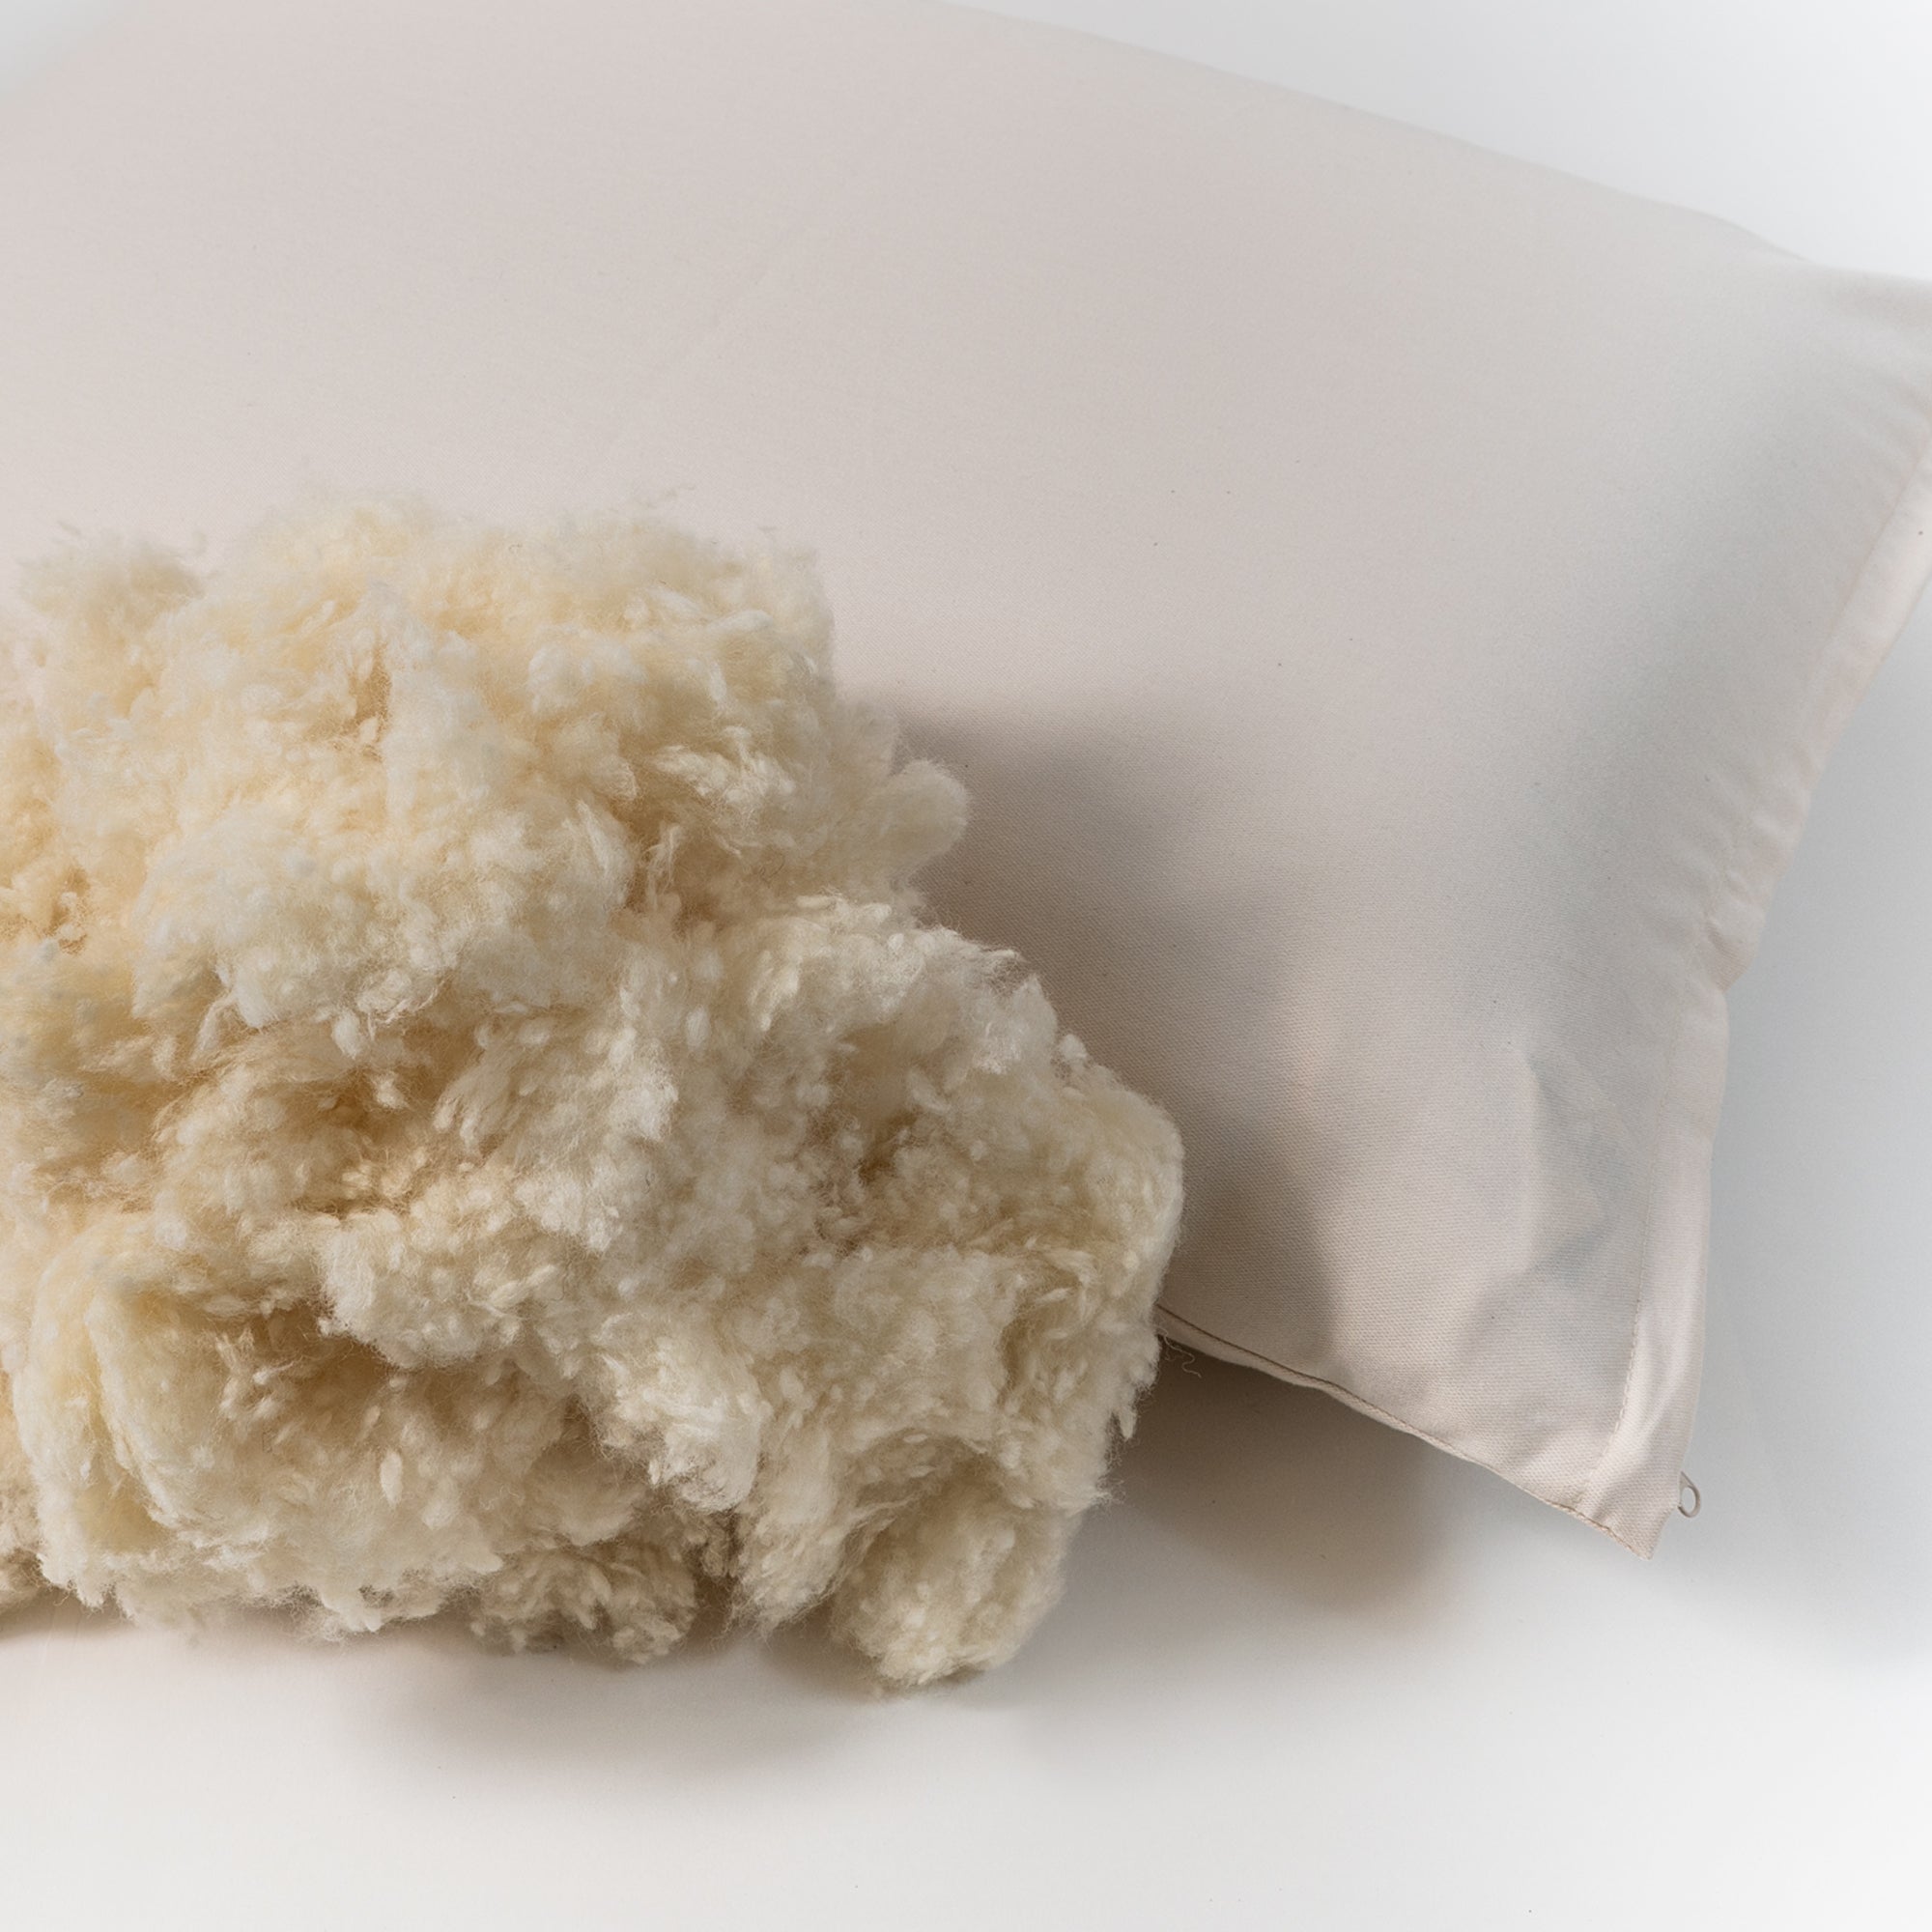 Wooly Bolas Pillow — Sachi Organics